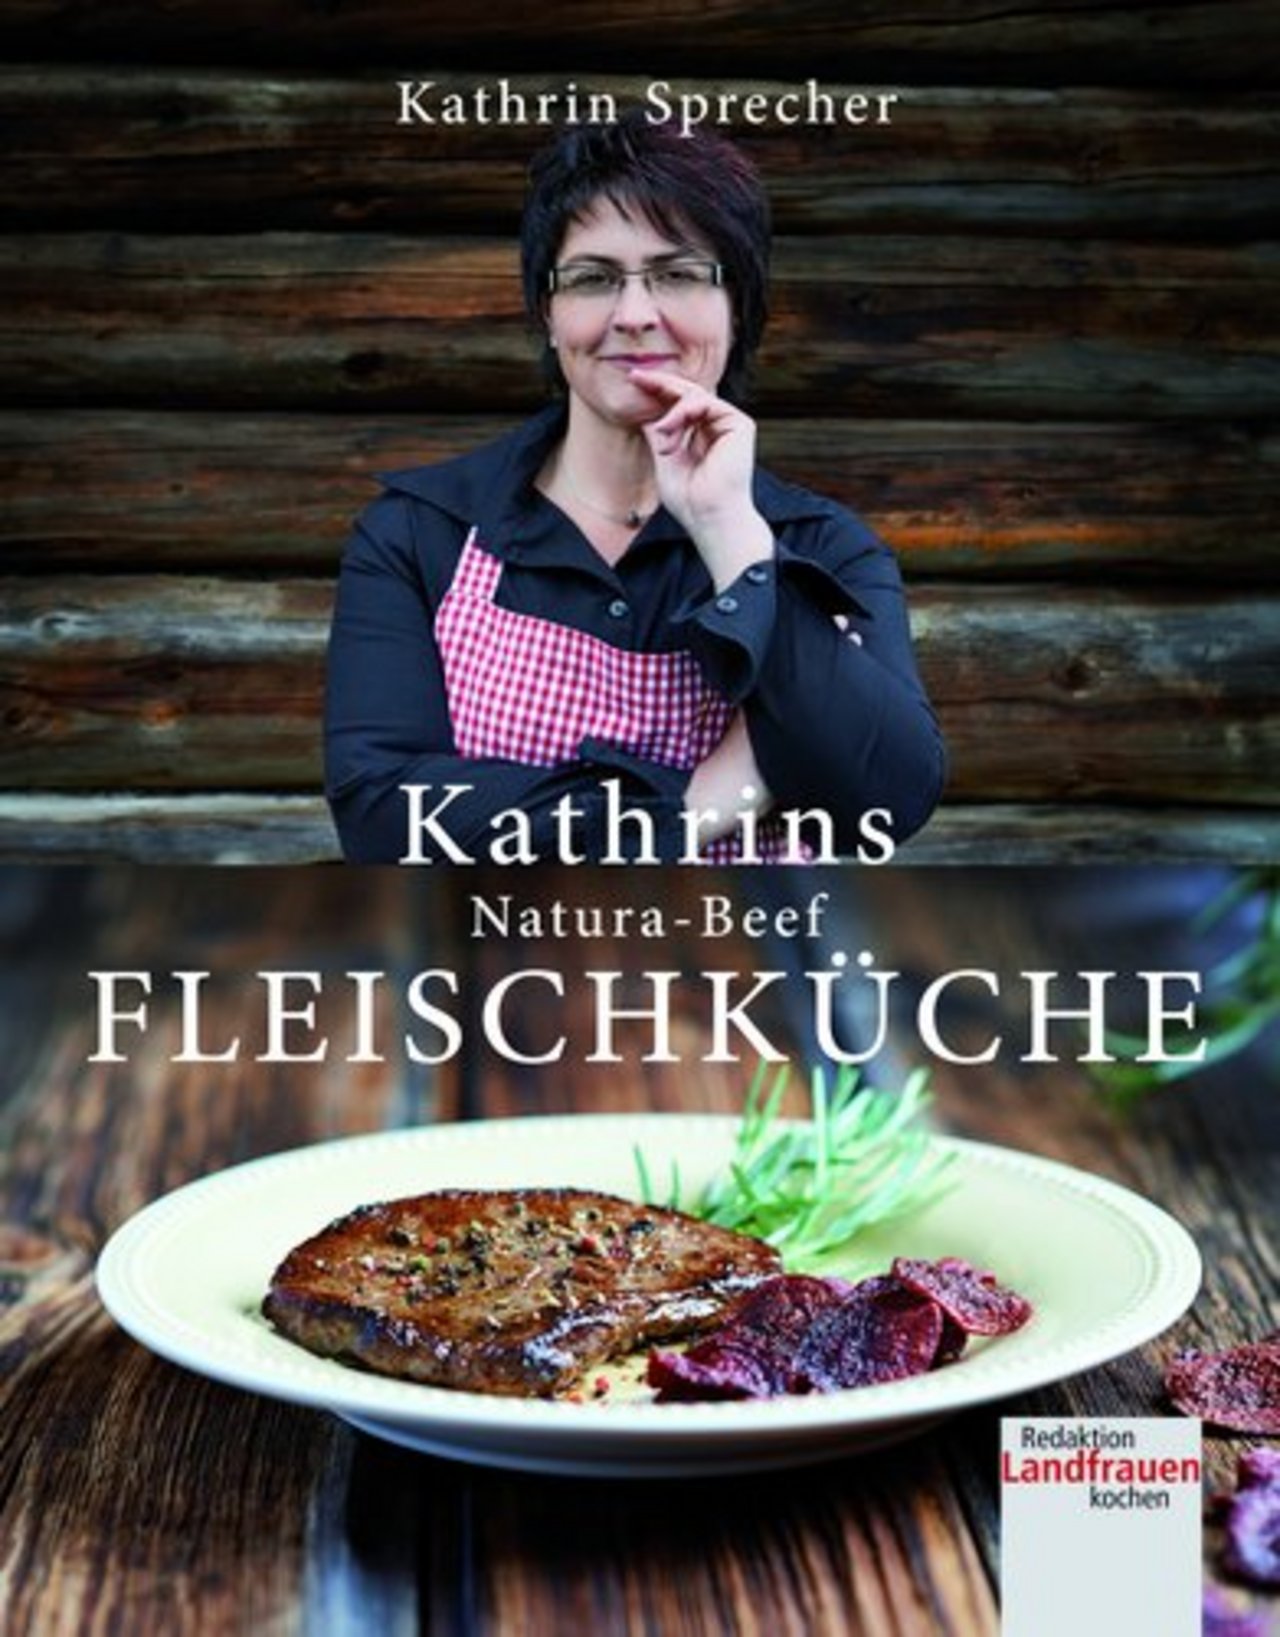 Kathrin Sprecher hat die fünfte Staffel der beliebten SRF-Sendung «Landfrauenküche» gewonnen. (Bild: zVg)